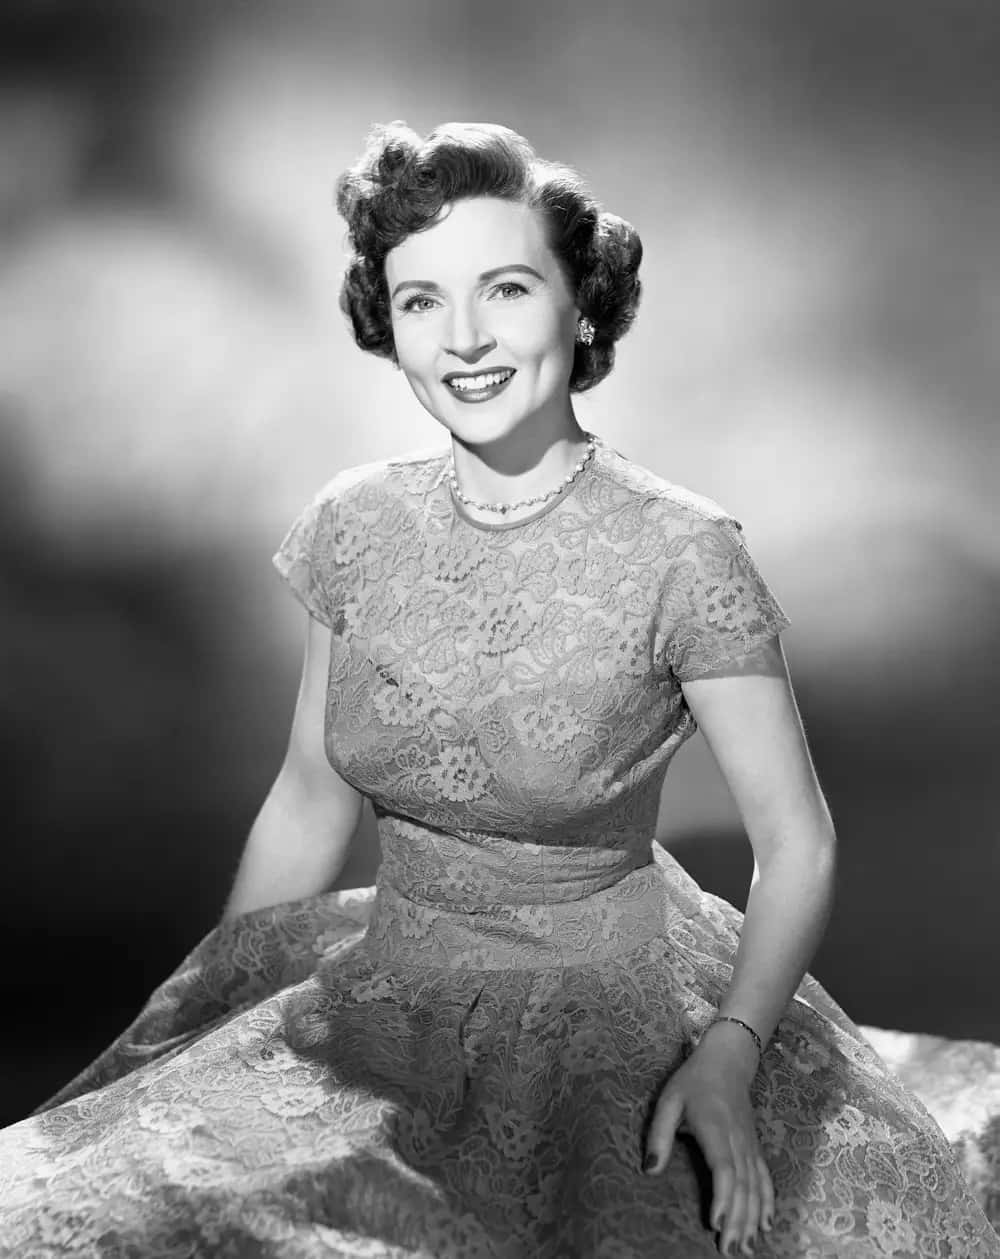 Einefrau In Einem Kleid Lächelt Auf Einem Schwarz-weiß-foto.